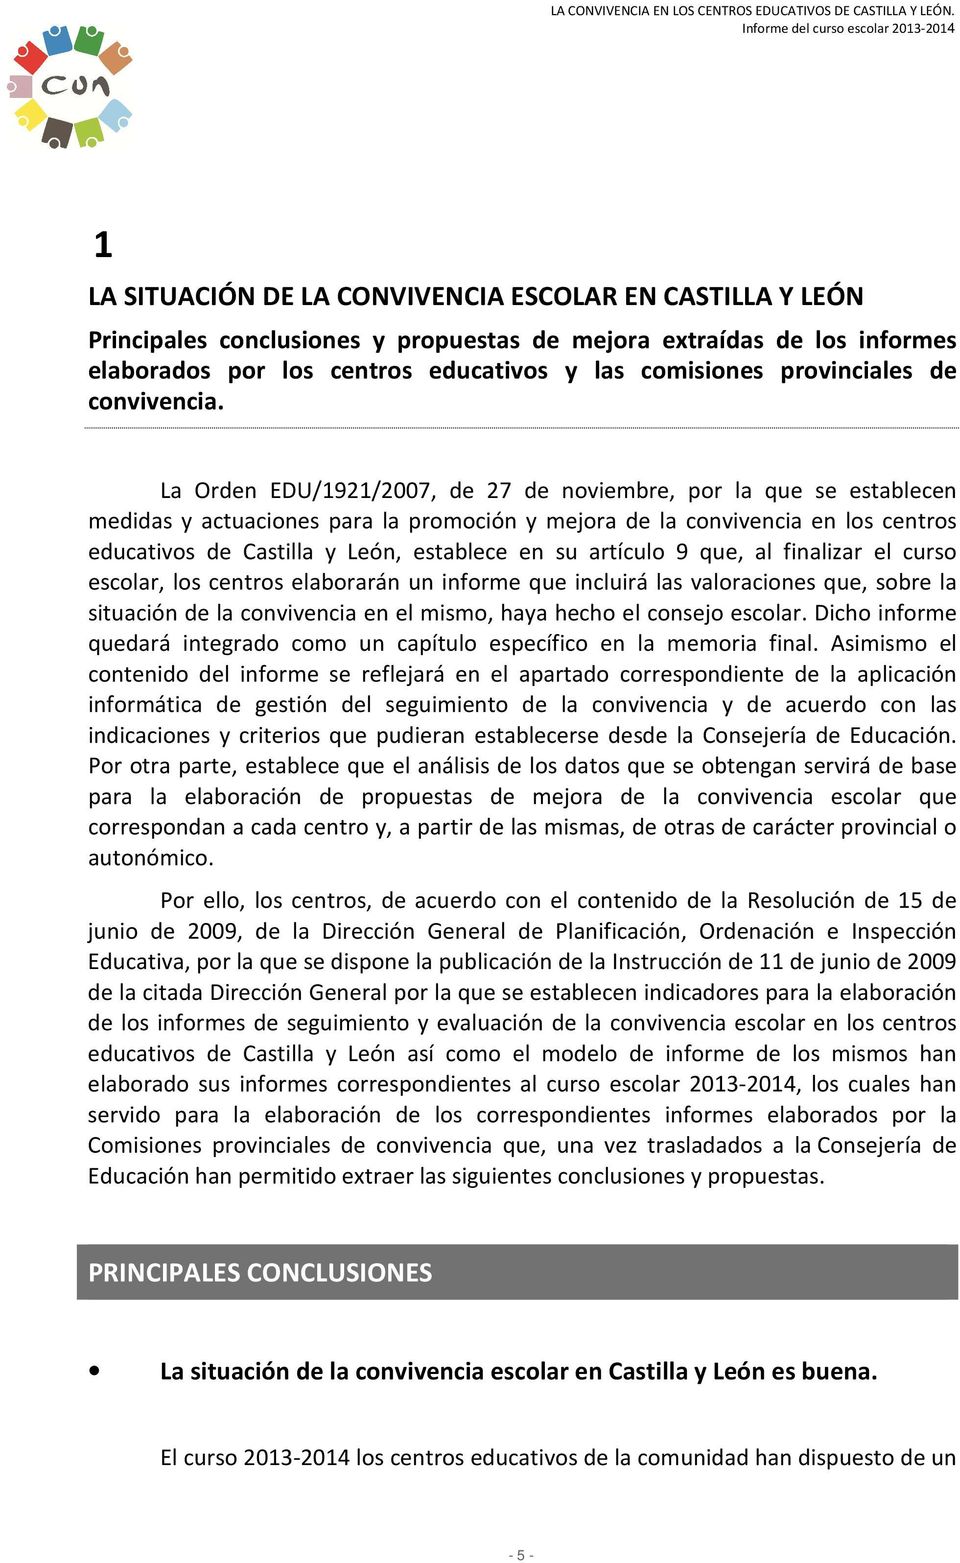 La Orden EDU/1921/2007, de 27 de noviembre, por la que se establecen medidas y actuaciones para la promoción y mejora de la convivencia en los centros educativos de Castilla y León, establece en su